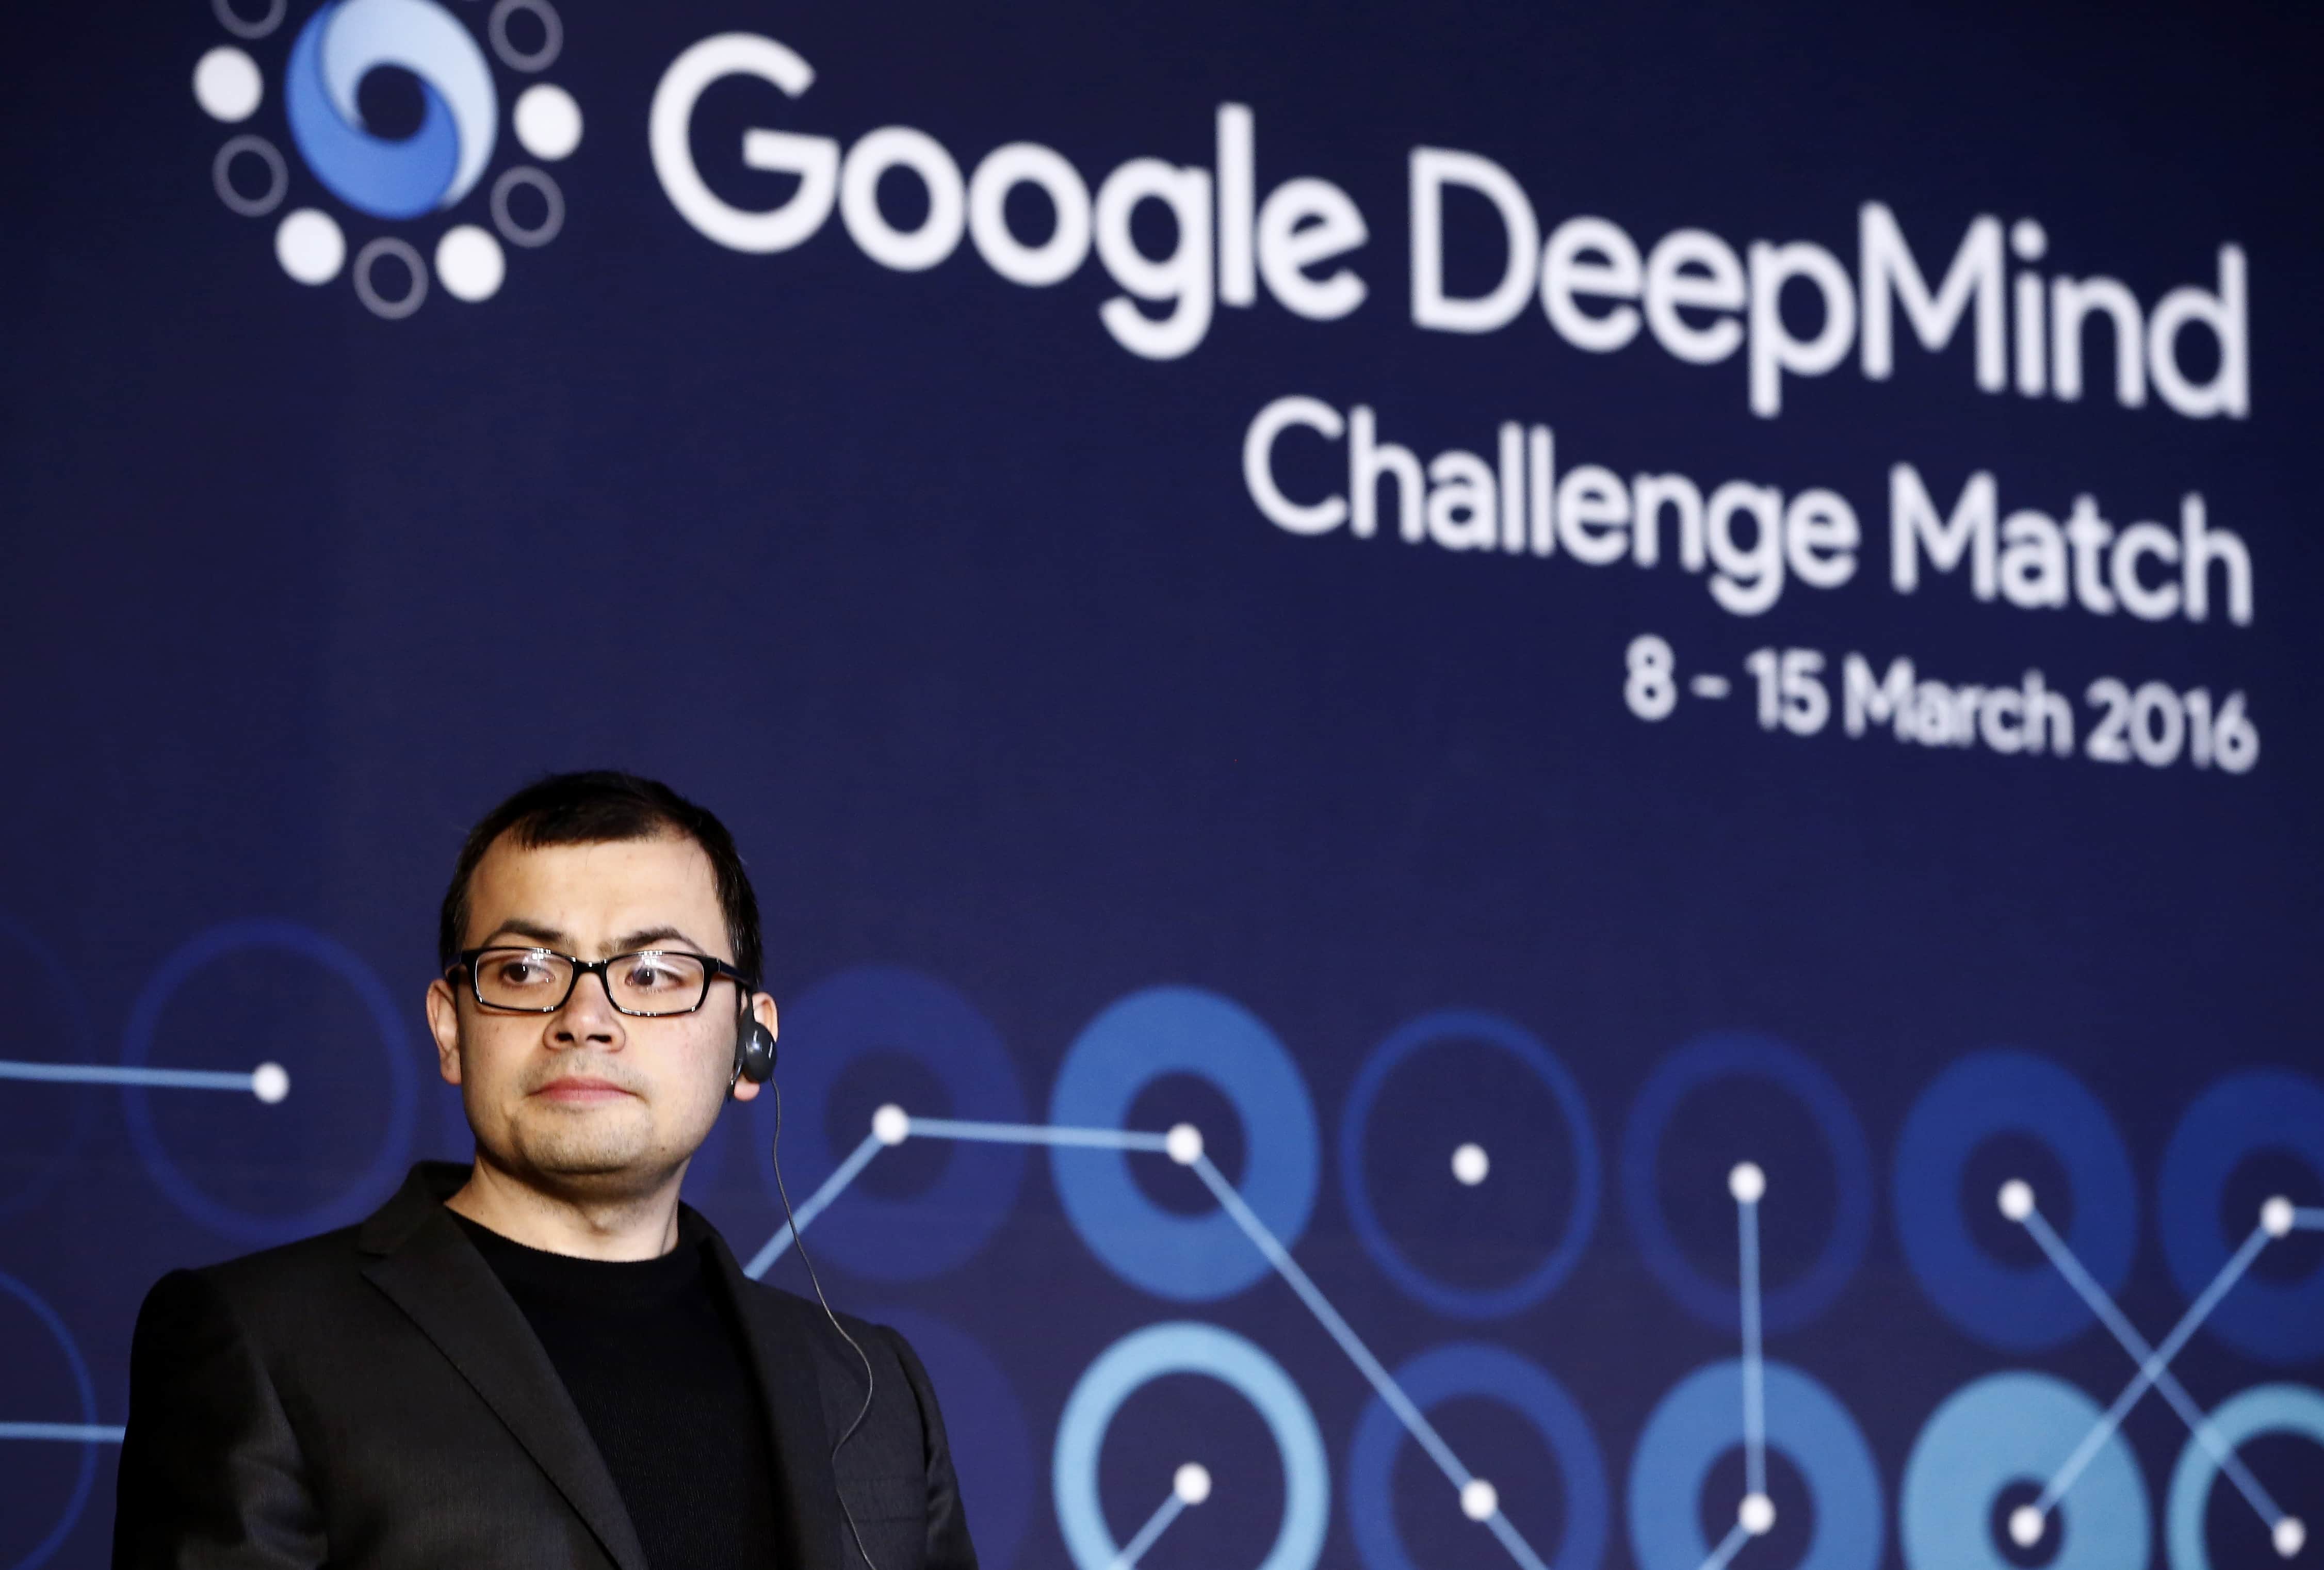 Деміс Хассабіс, співзасновник стартапу Google зі штучного інтелекту (AI) DeepMind. говорить під час прес-конференції після завершення фінального матчу Google DeepMind Challenge Match проти програми штучного інтелекту Google, AlphaGo, 15 березня 2016 року в Сеулі, Південна Корея. Лі Седол грає в серії з п’яти матчів проти комп’ютерної програми AlphaGo, розробленої Google